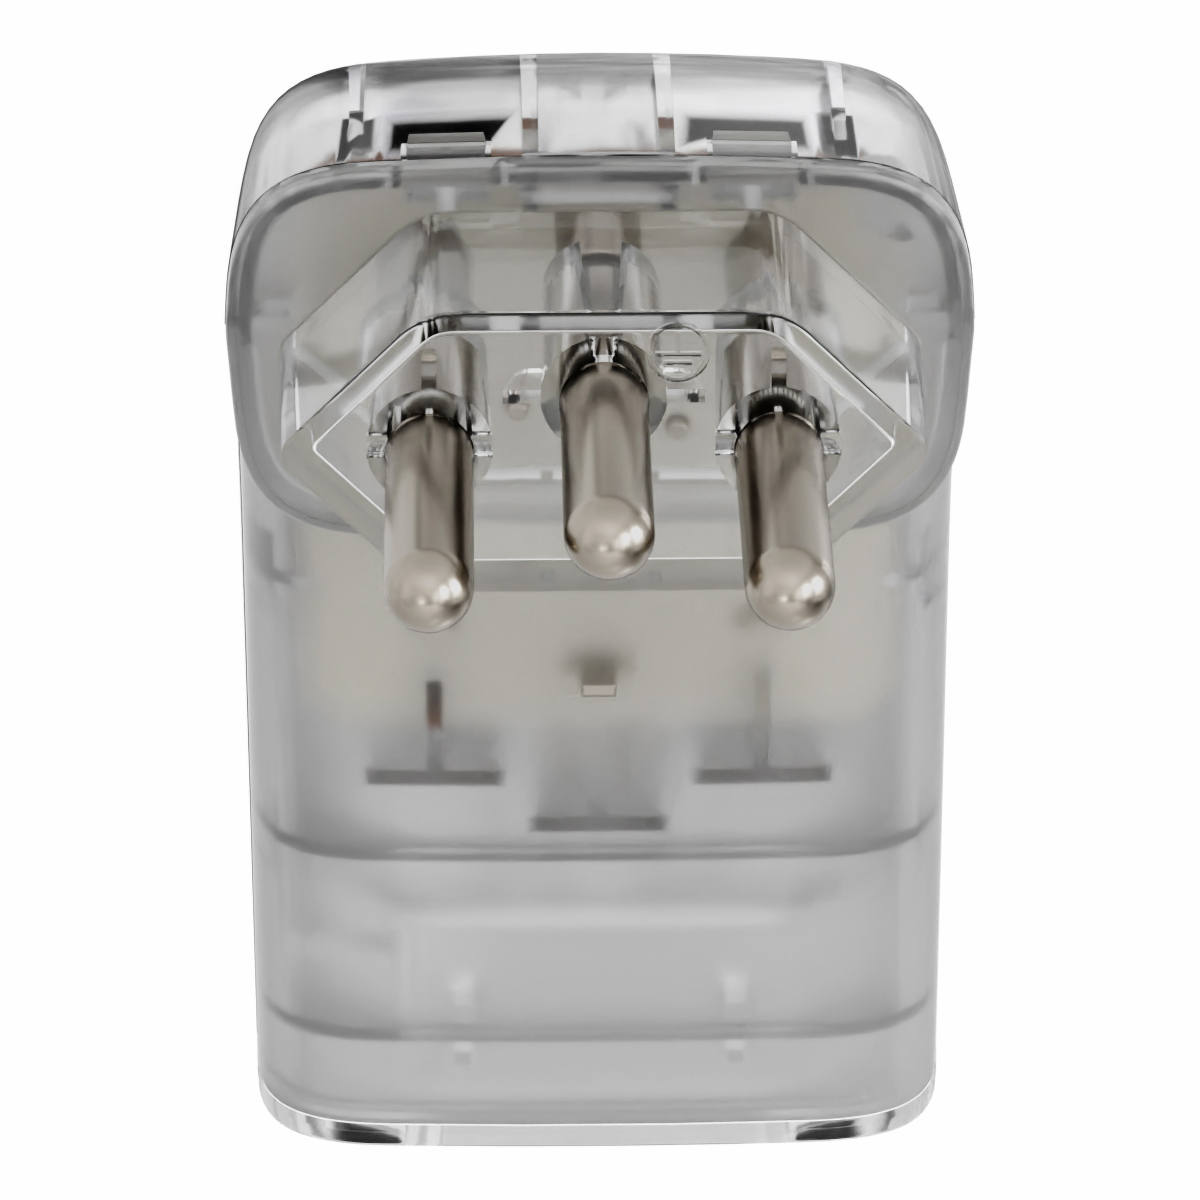 iClamper Pocket Fit 3 Pinos 10A DPS Proteção contra Raios e Surtos Elétricos Mesmo Sem Aterramento Clamper Transparente